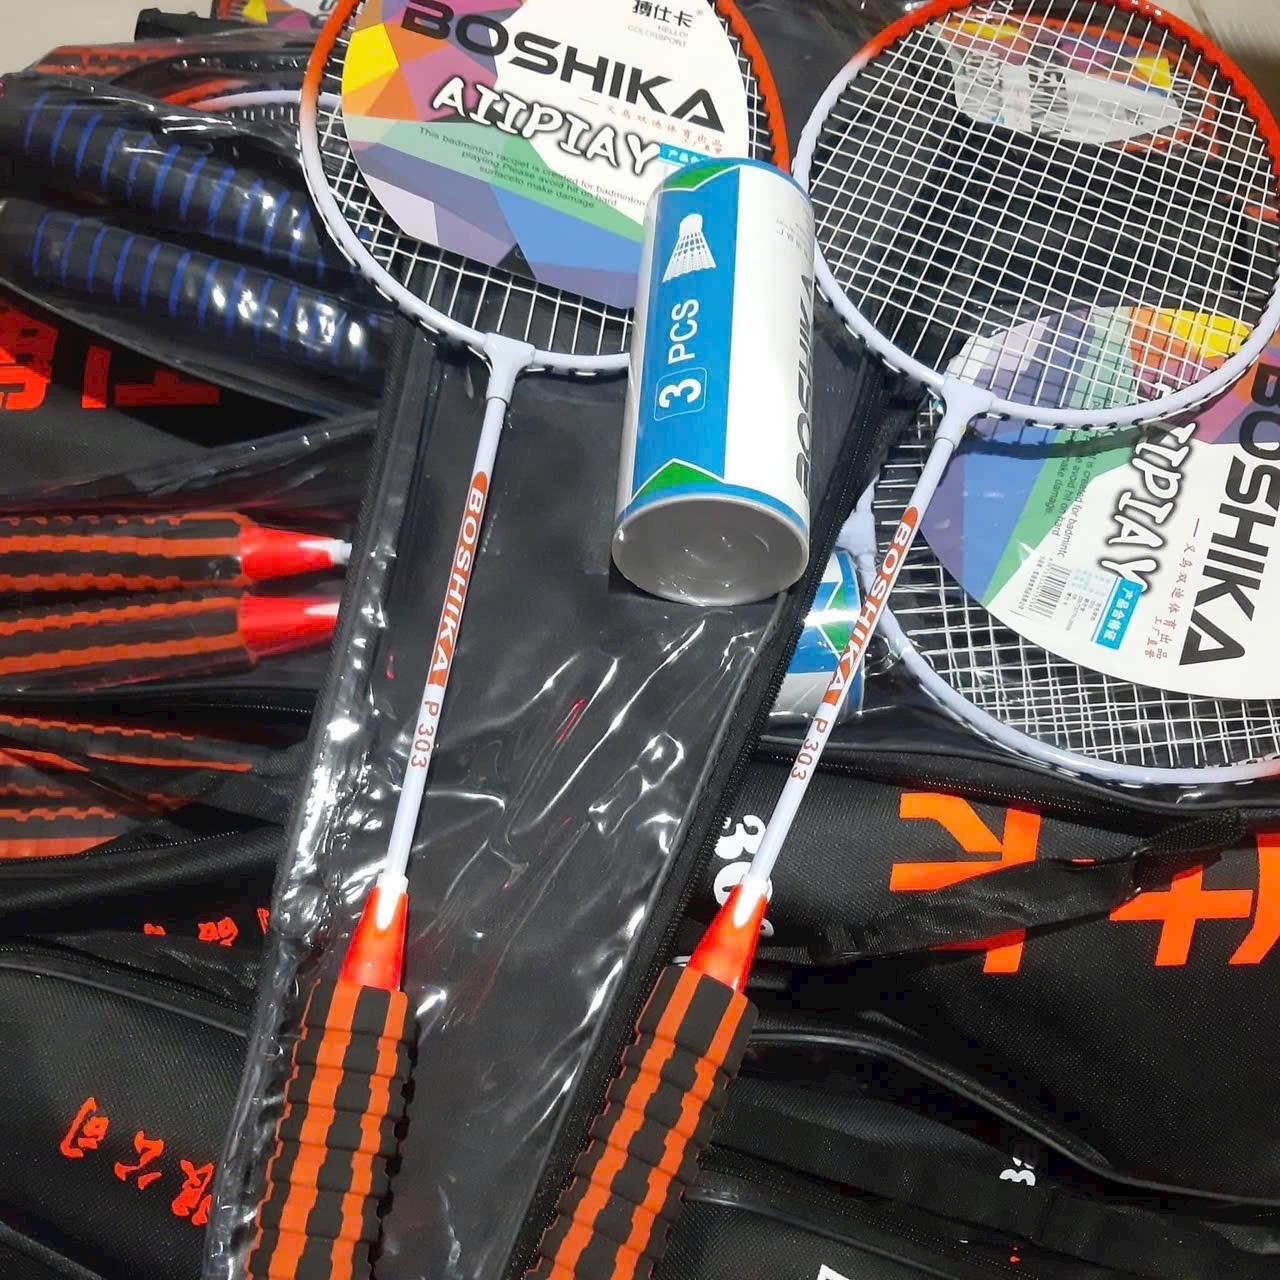 Bộ vợt cặp đánh cầu lông BOSIKA/ BOWANG cho bé / người lớn (tặng kèm 3 quả cầu)